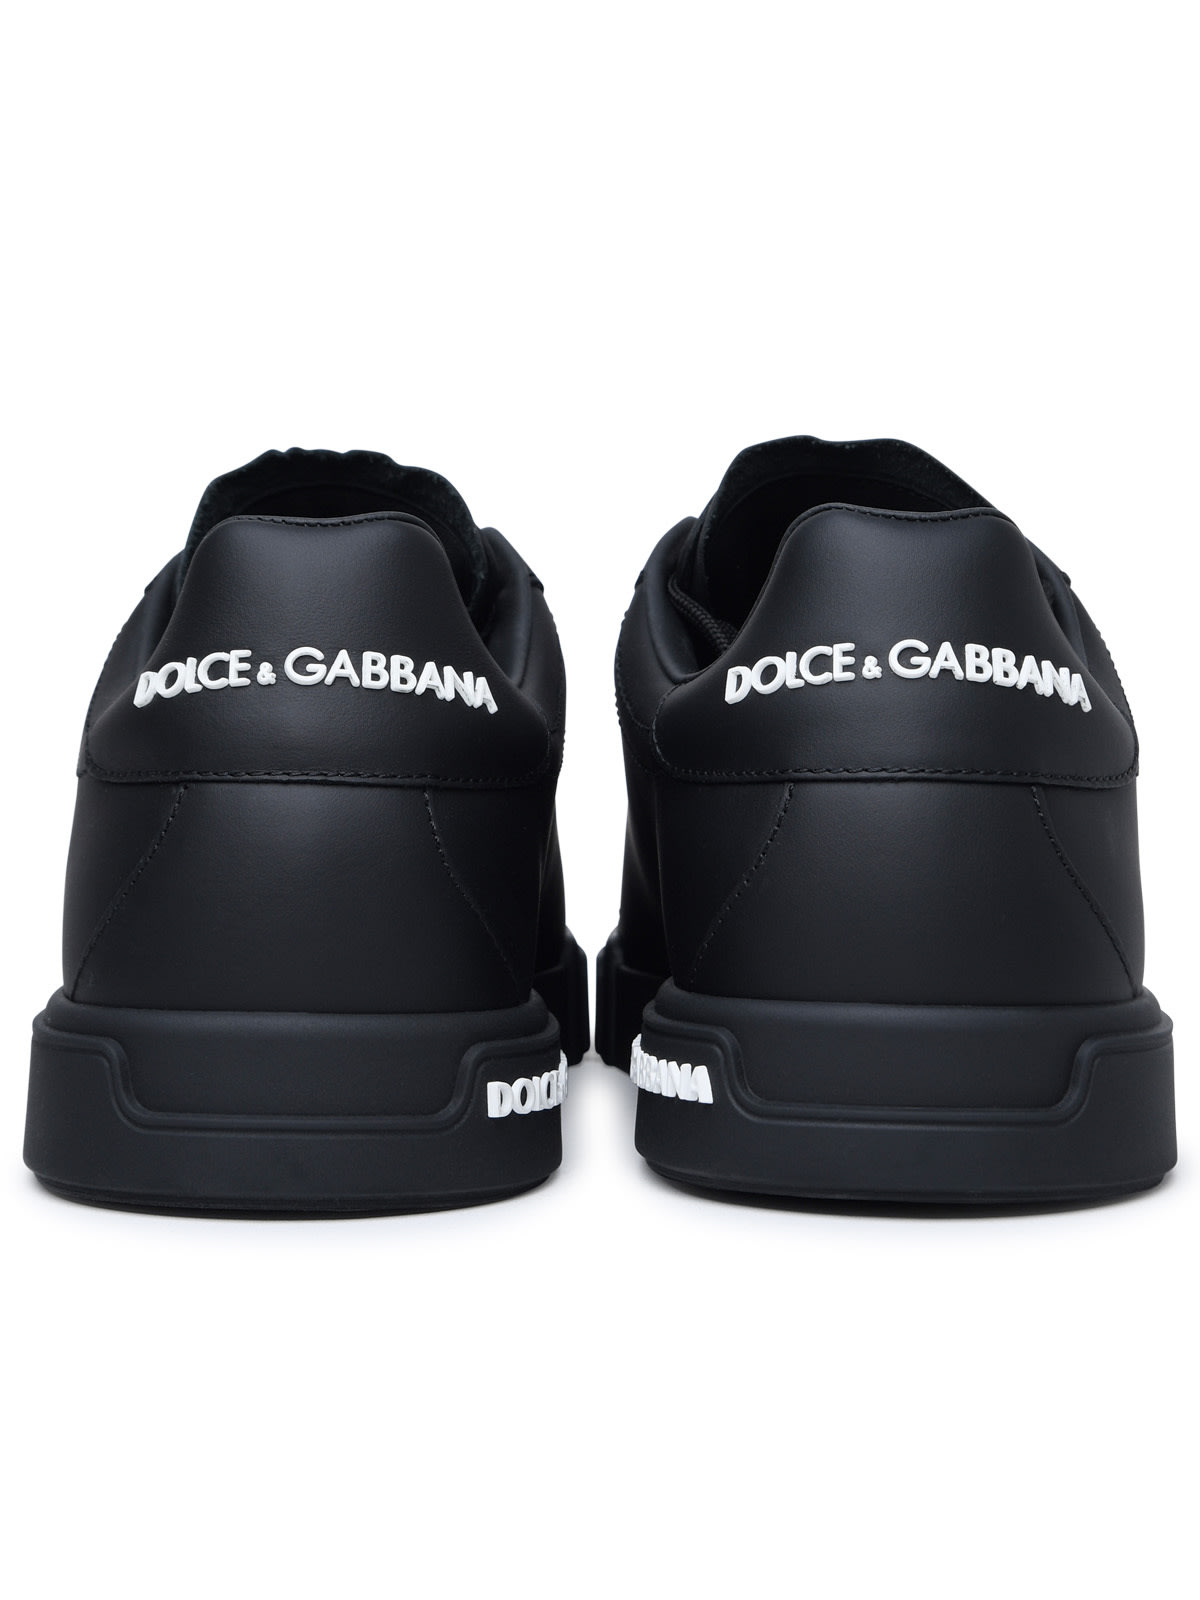 Shop Dolce & Gabbana Portofino Black Calf Leather Sneakers